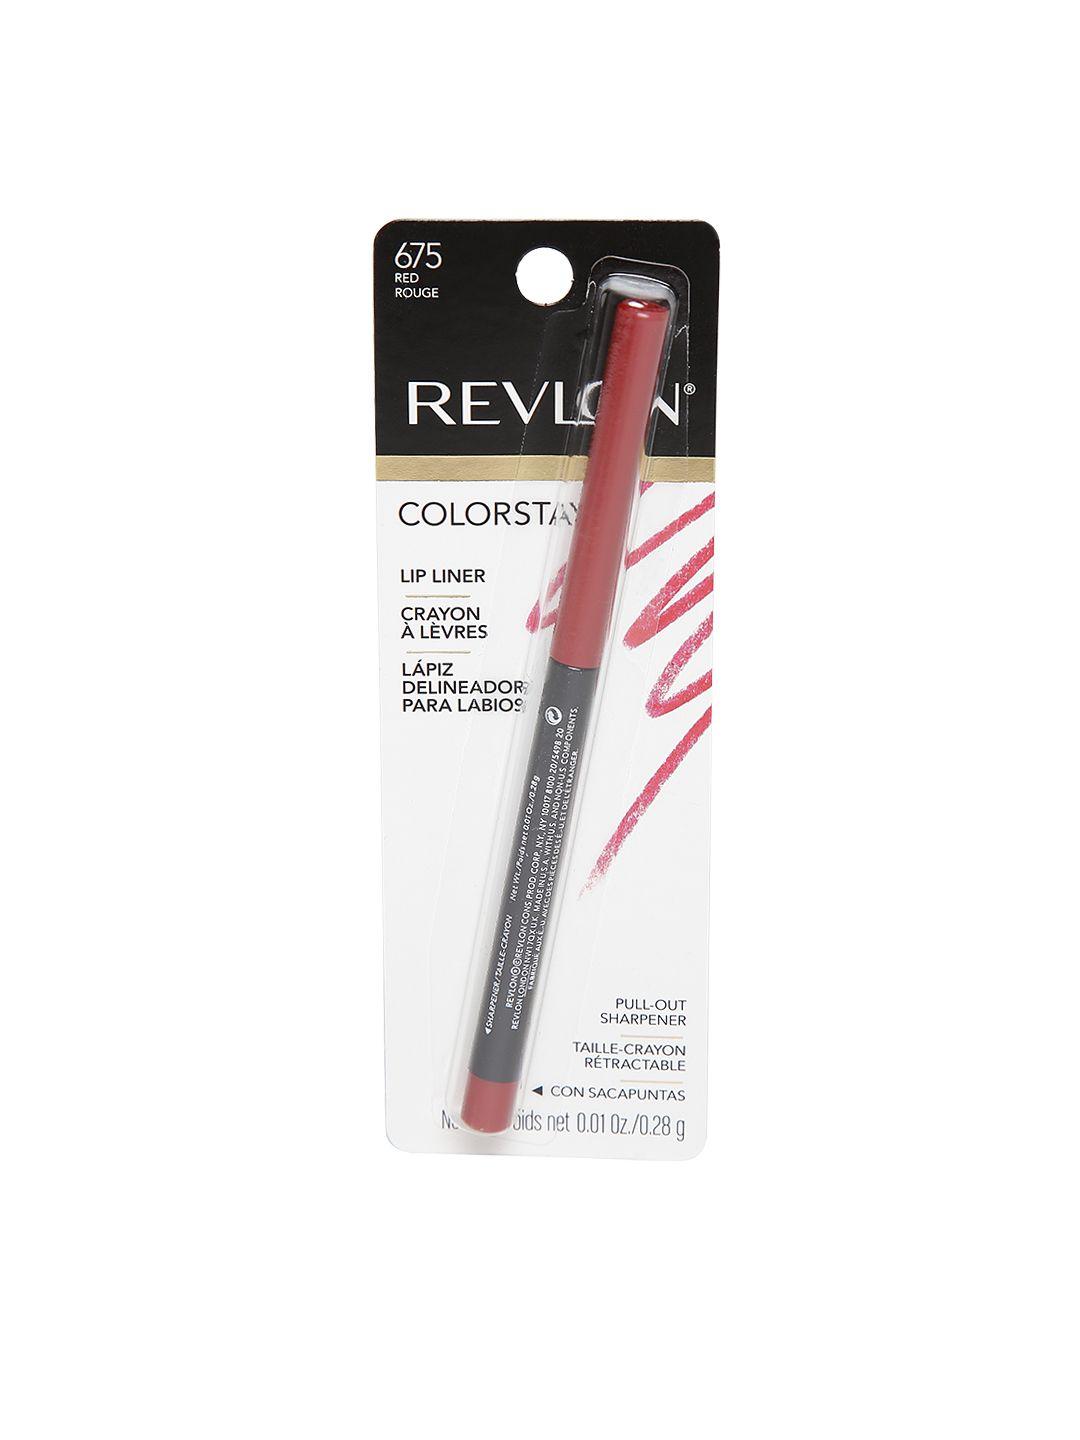 revlon colorstay red rouge lip liner 675